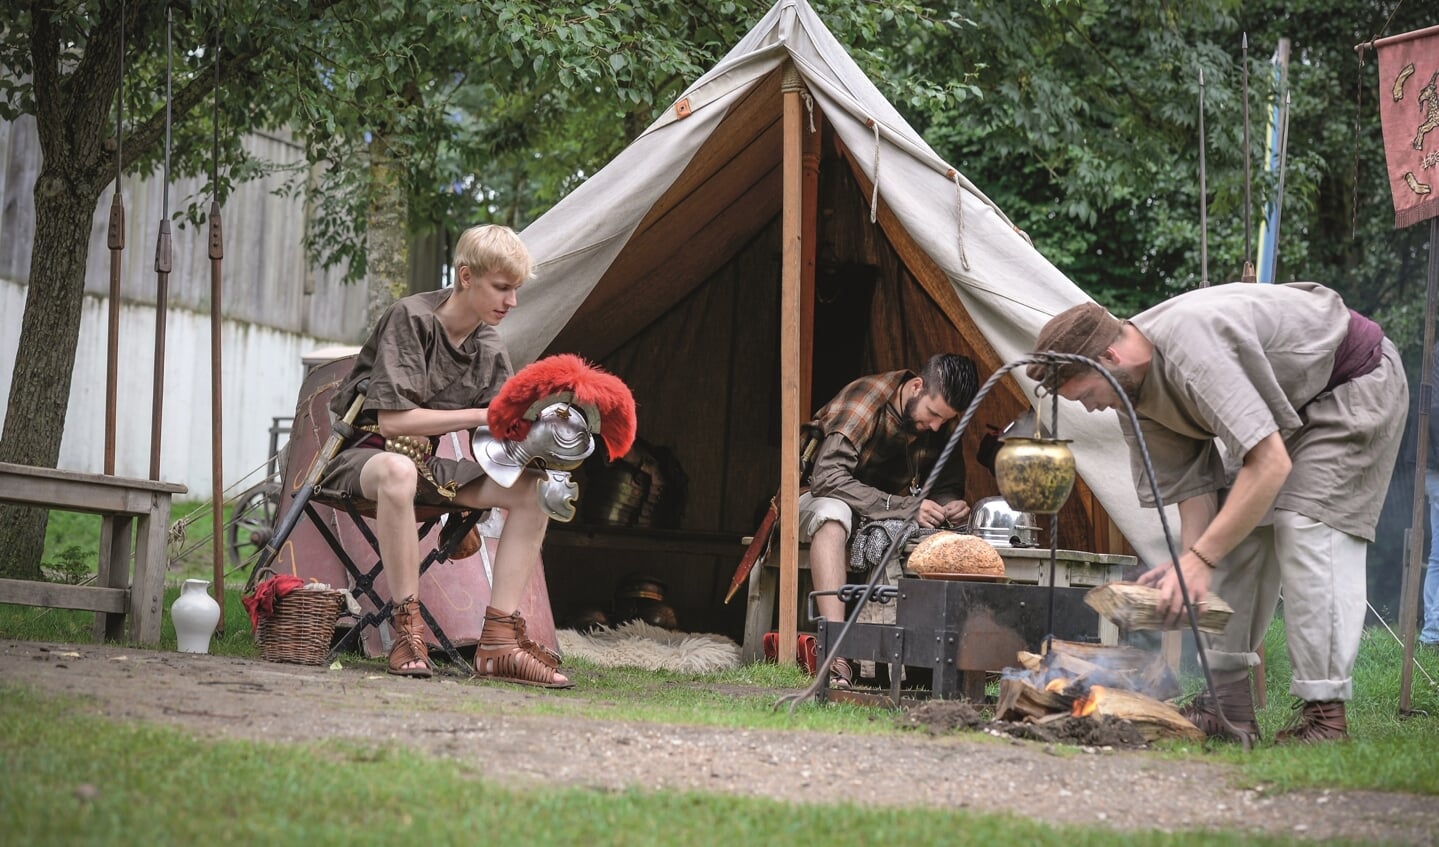 Romeinse legionairs slaan hun kamp op, zij worden vergezeld door ambachtslieden, dames en kinderen. 